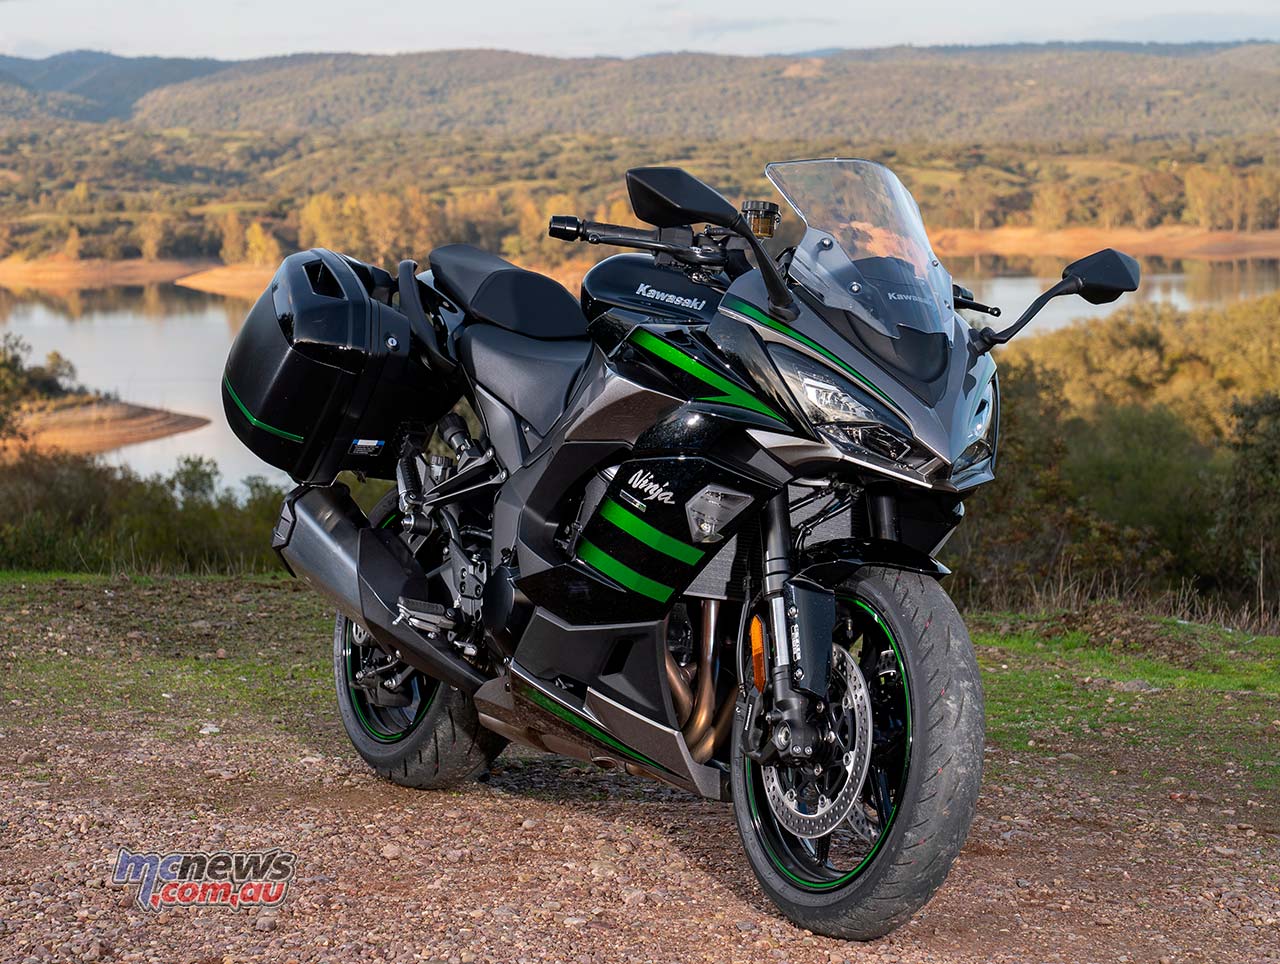 4 things we love about the Kawasaki Ninja 1000 SX